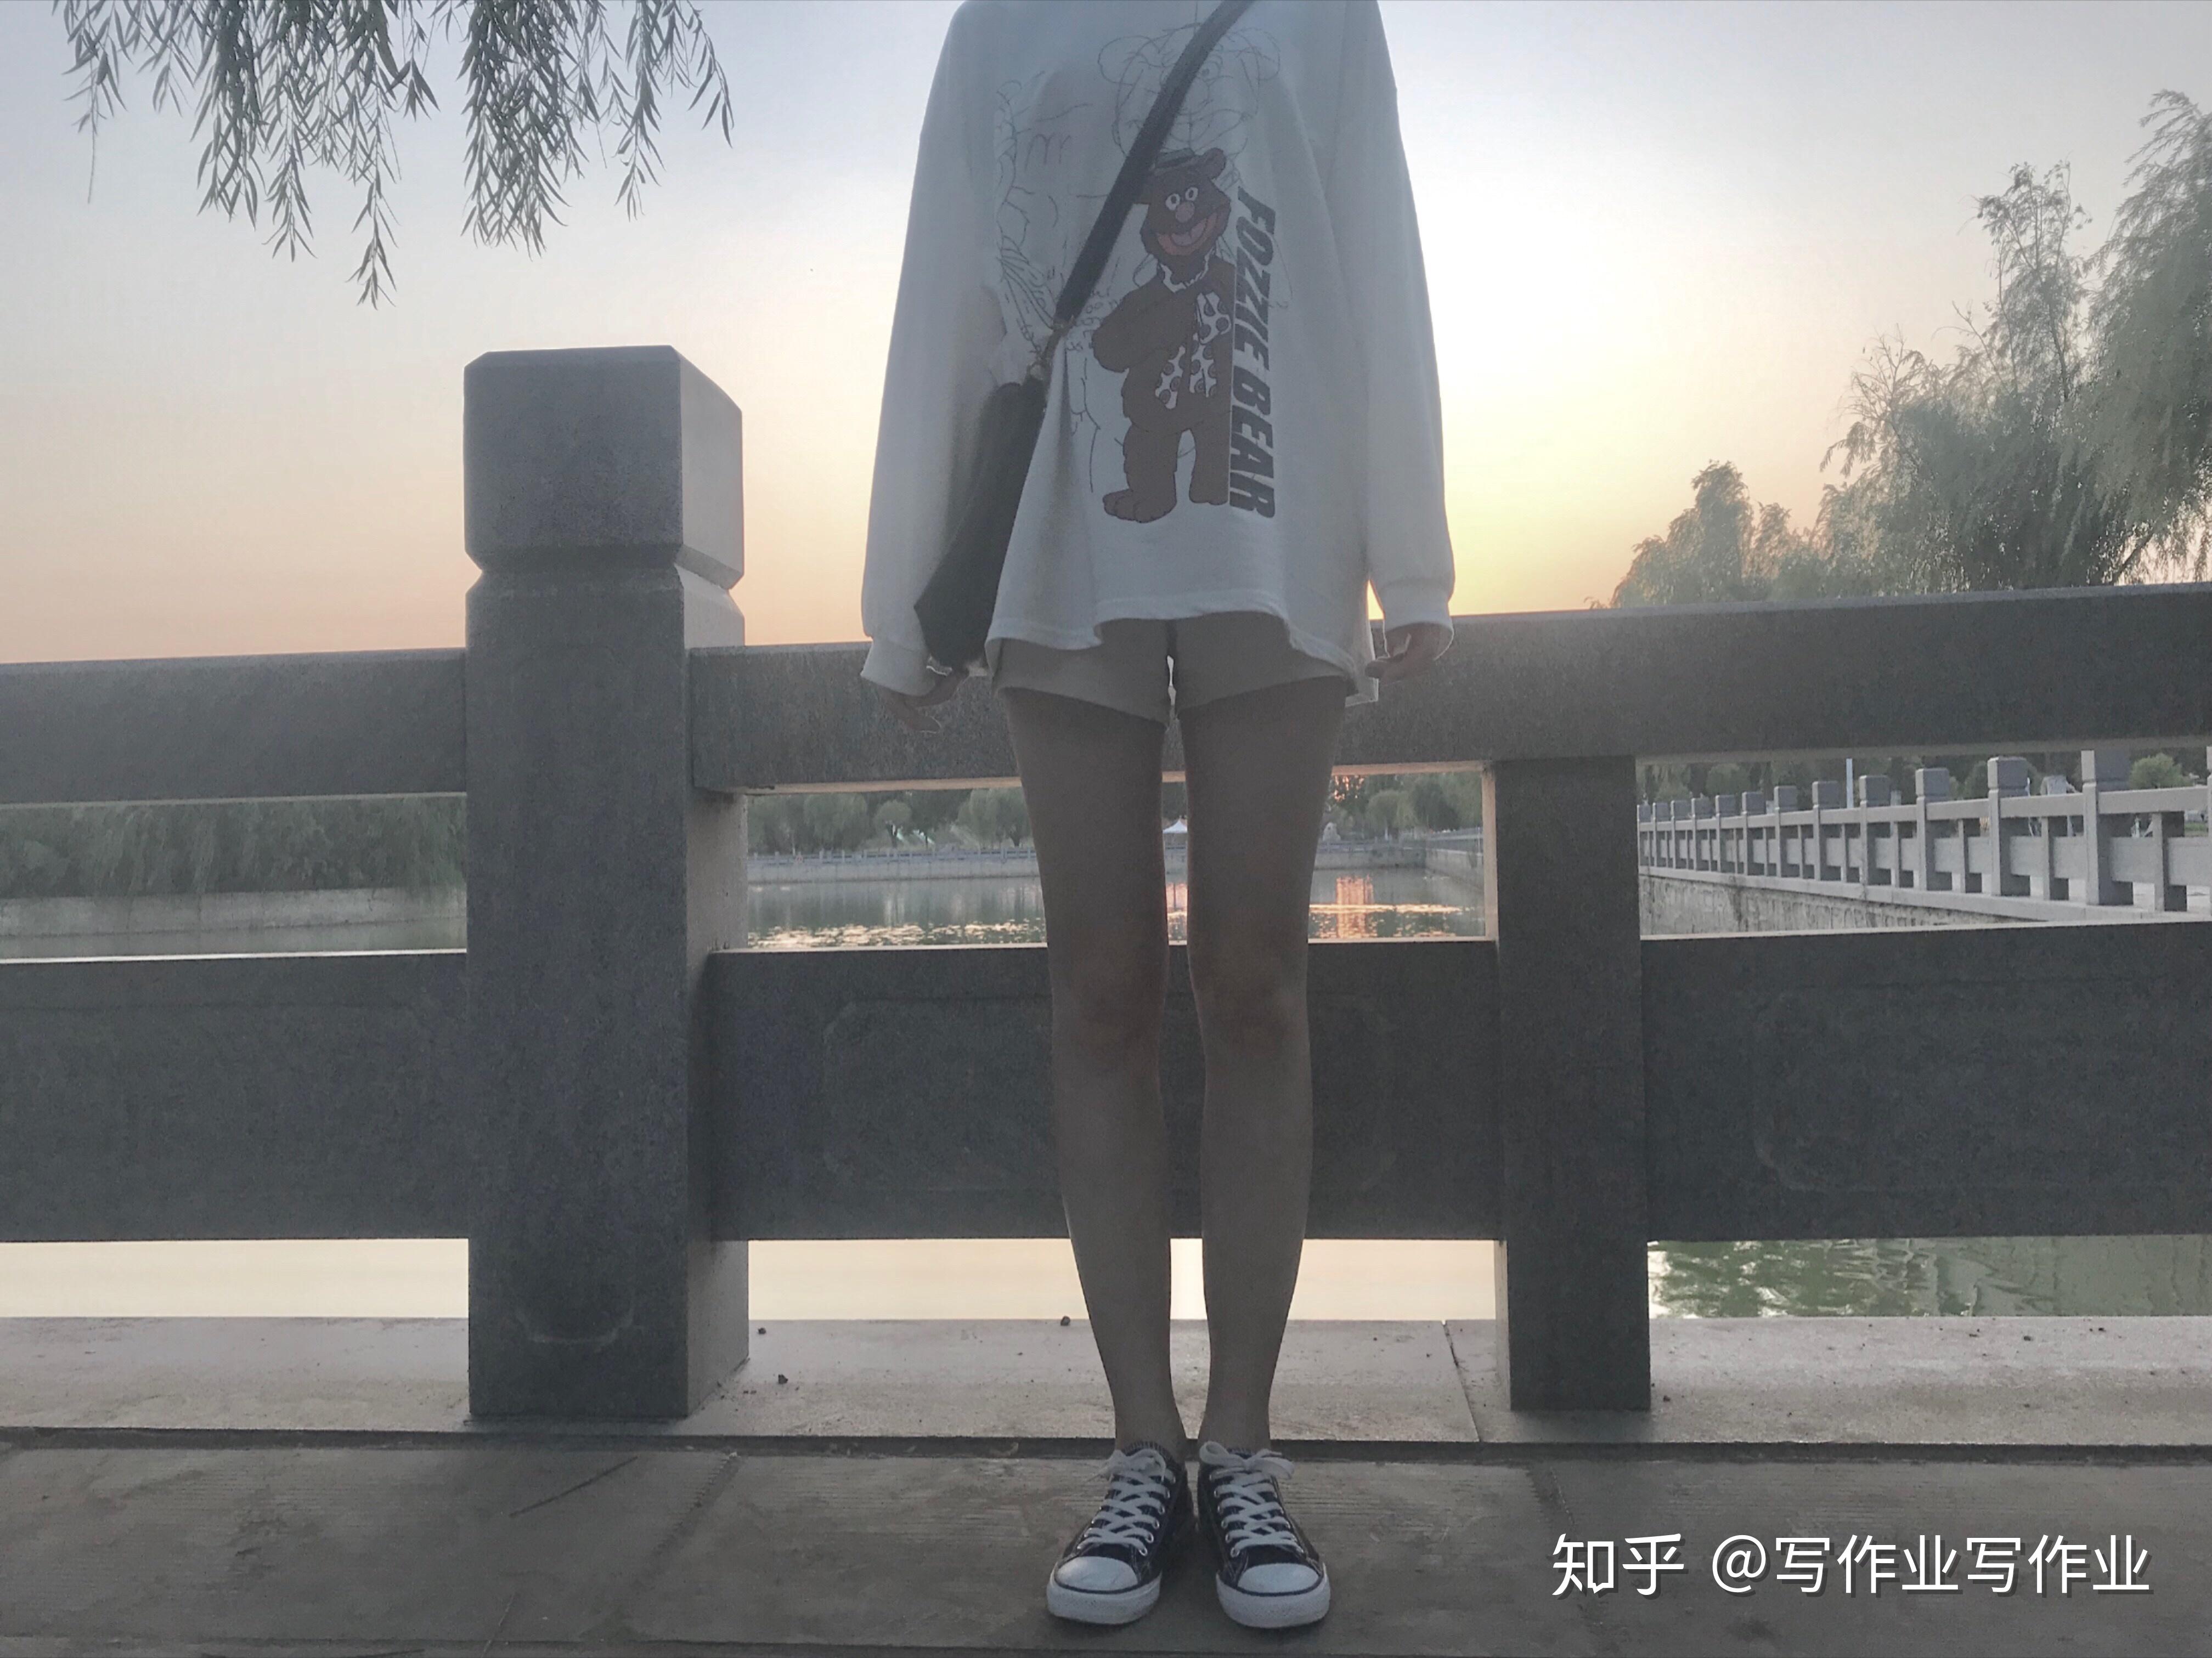 美女校花 北京城市学院 李雨佳 18岁 身高165cm 体重100斤 喜欢跳舞